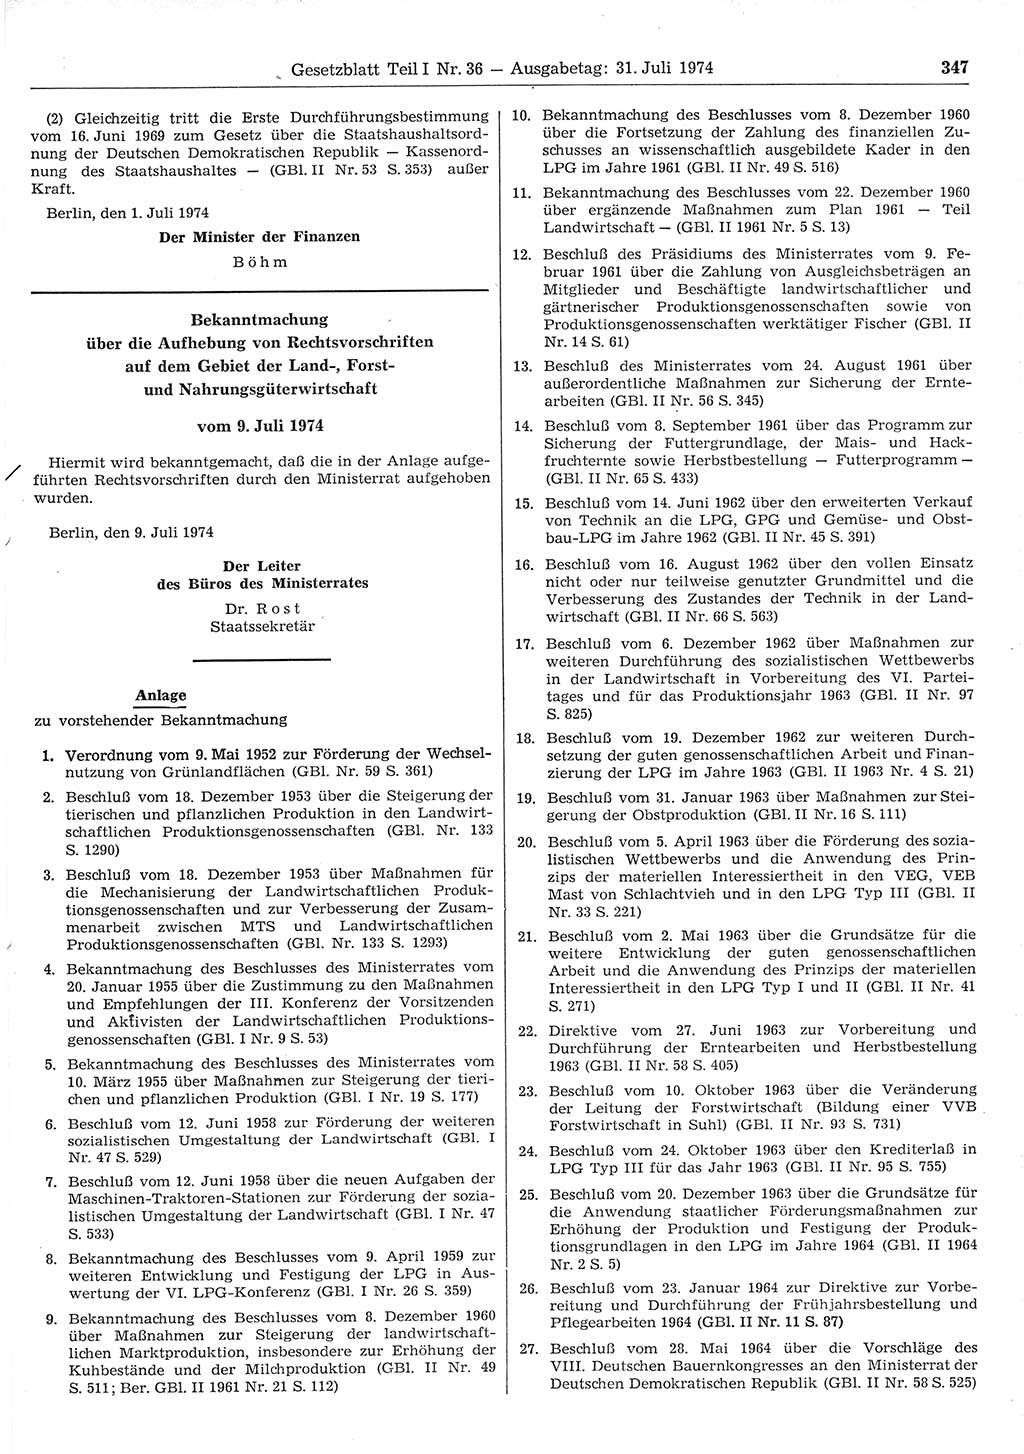 Gesetzblatt (GBl.) der Deutschen Demokratischen Republik (DDR) Teil Ⅰ 1974, Seite 347 (GBl. DDR Ⅰ 1974, S. 347)